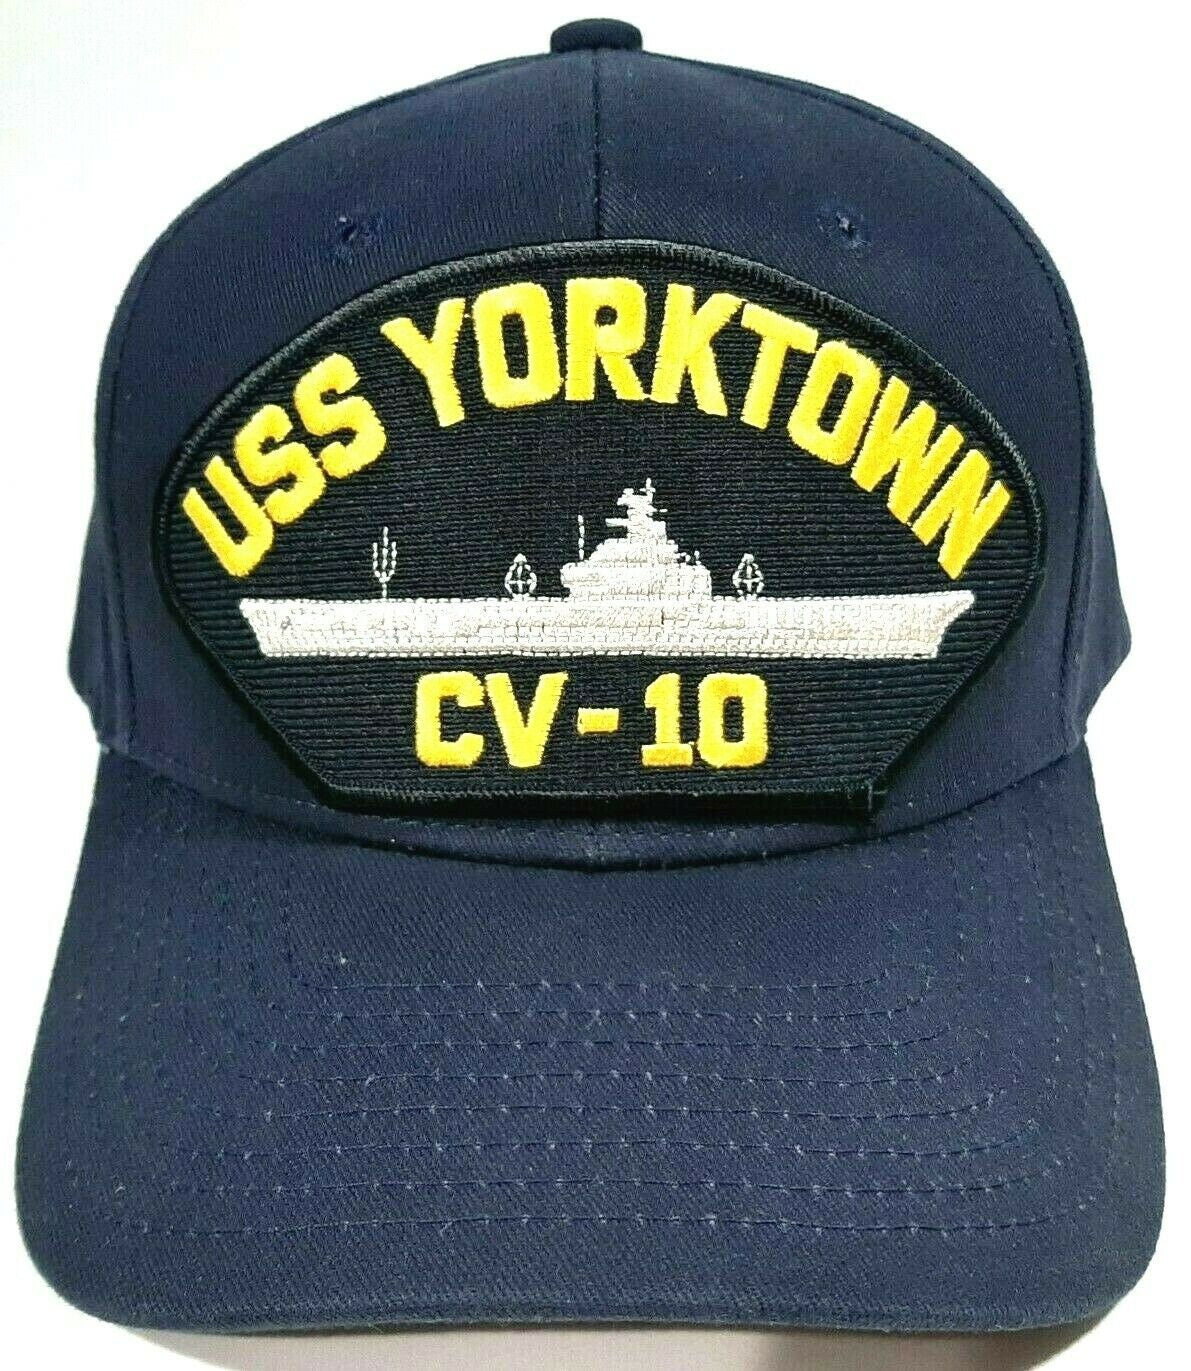 U.S. Navy USS YORKTOWN CV-10 Men's Cap Hat Navy Blue